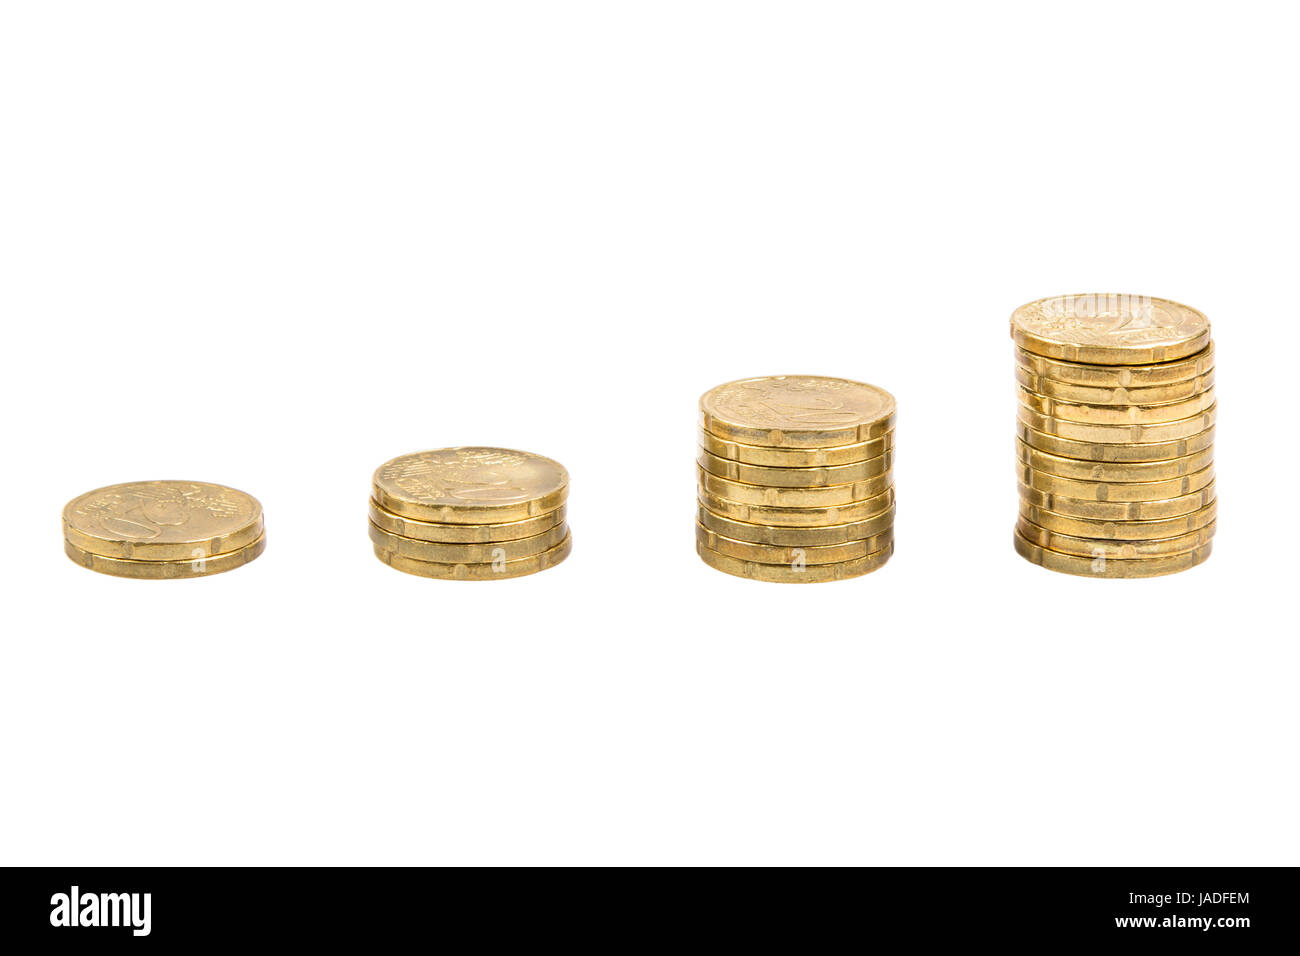 Gestapelte 20 Cent Münzen in form eines Balkendiagrams freigestellt auf weißem Hintergrund - 20 Cent coins stacked as a bar graph isolated on white background Stock Photo